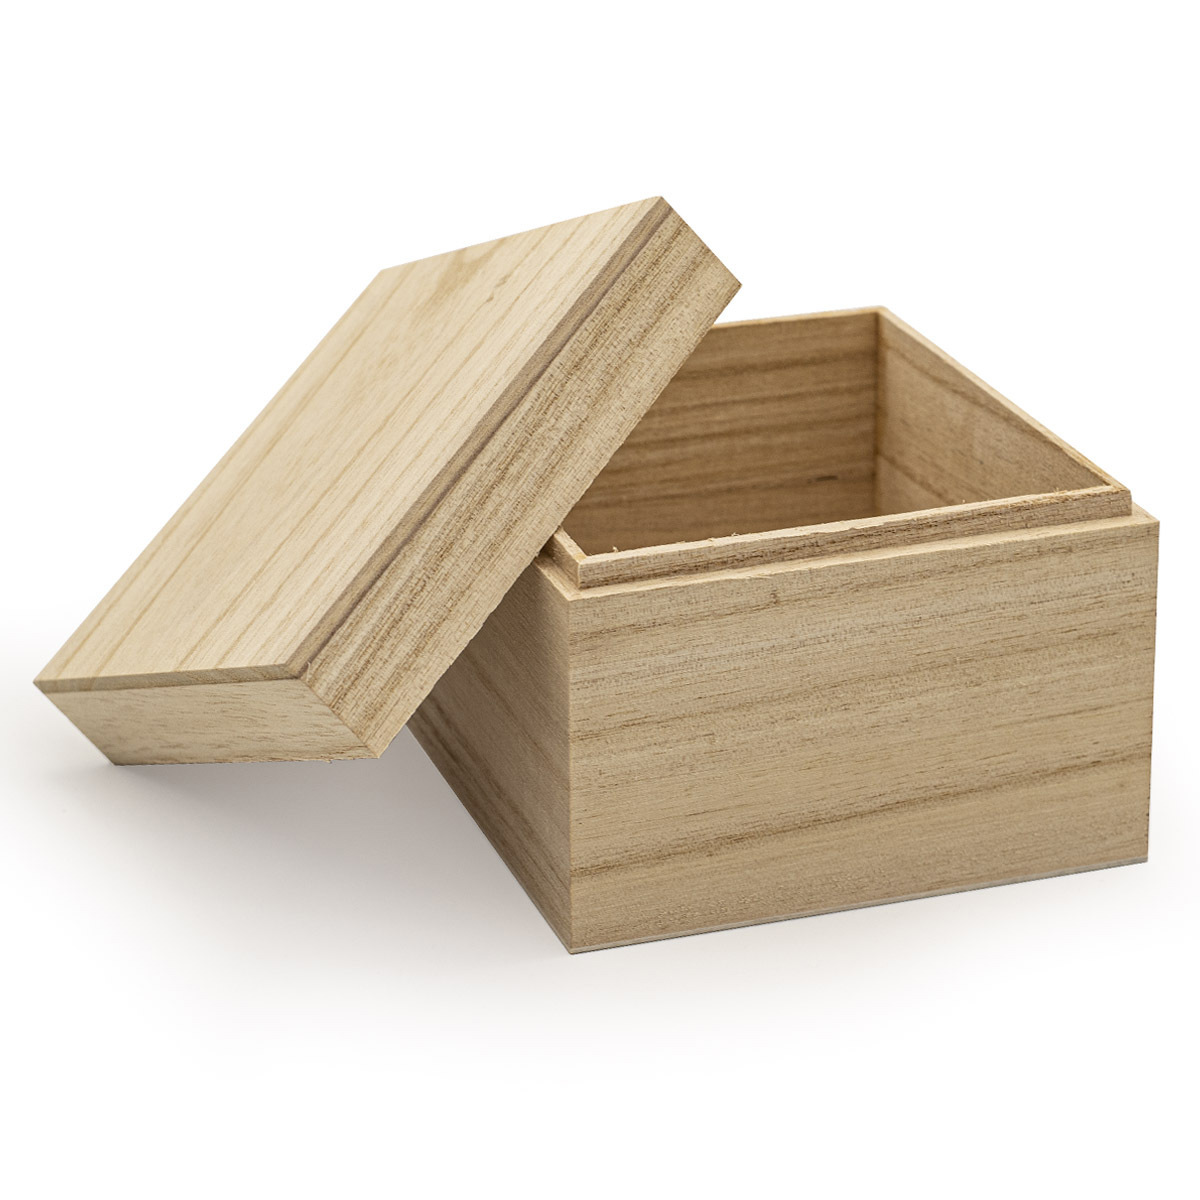 Деревянные коробки оптом от Производителя! Купить коробки из фанеры и древа.